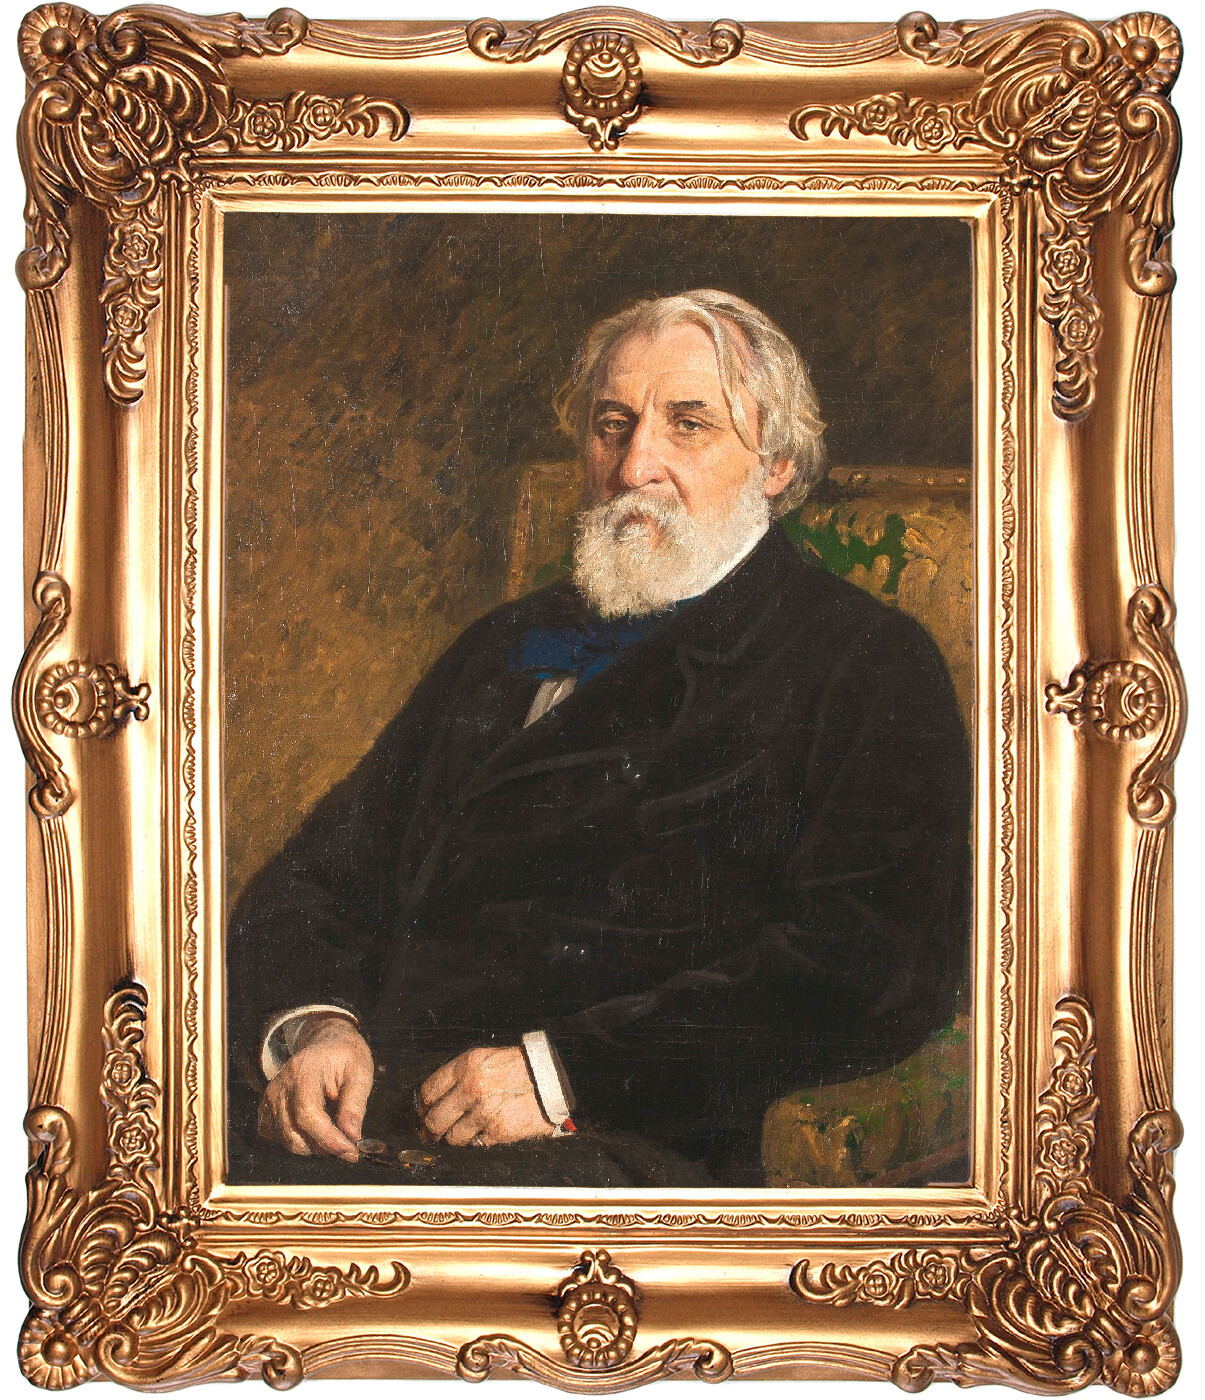 Ilya Repin. Portrait of Ivan Turgenev, 1874